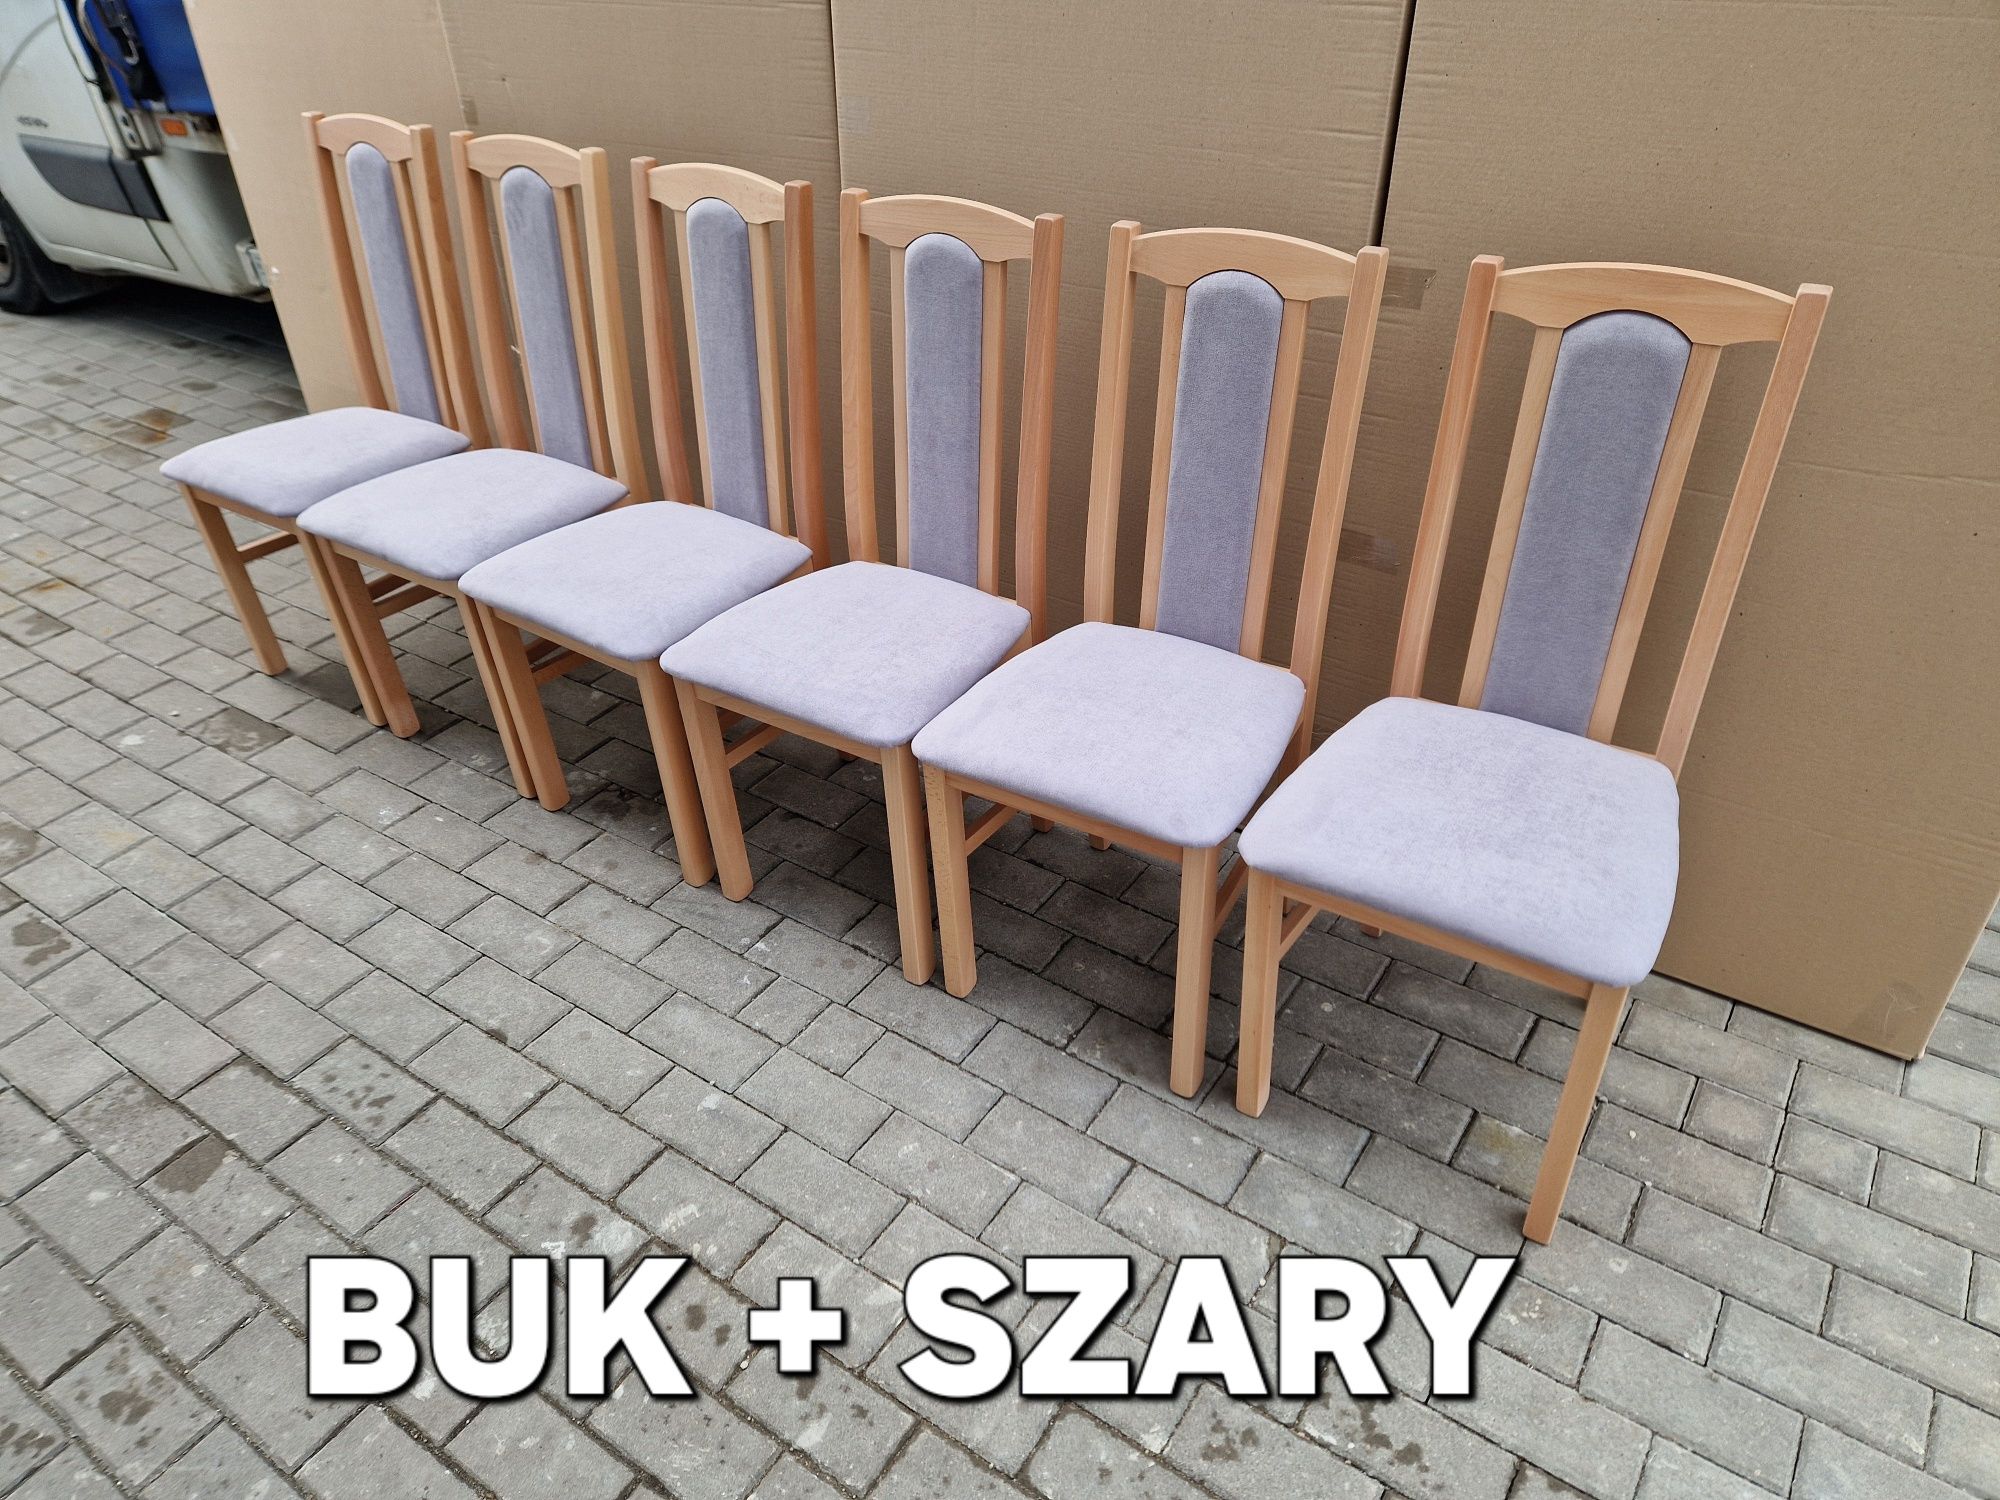 Stół rozkładany + 6 krzeseł, buk/wotan + szary, transport cała PL